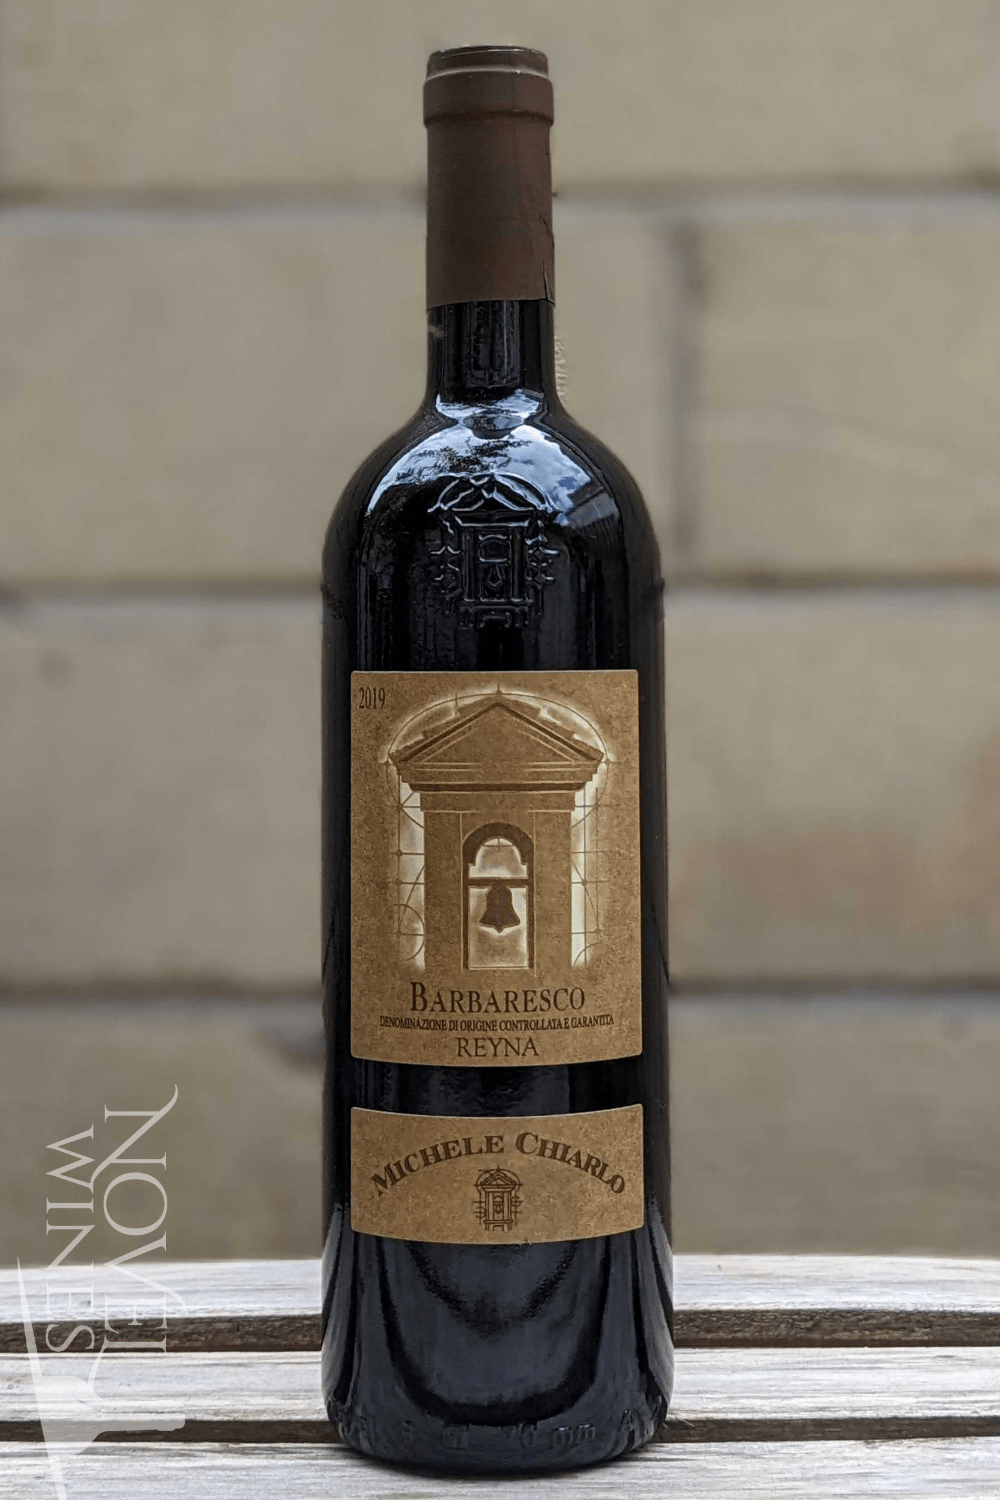 Carminucci Red Wine Michele Chiarlo 'Reyna' Barbaresco Nebbiolo 2019, Italy